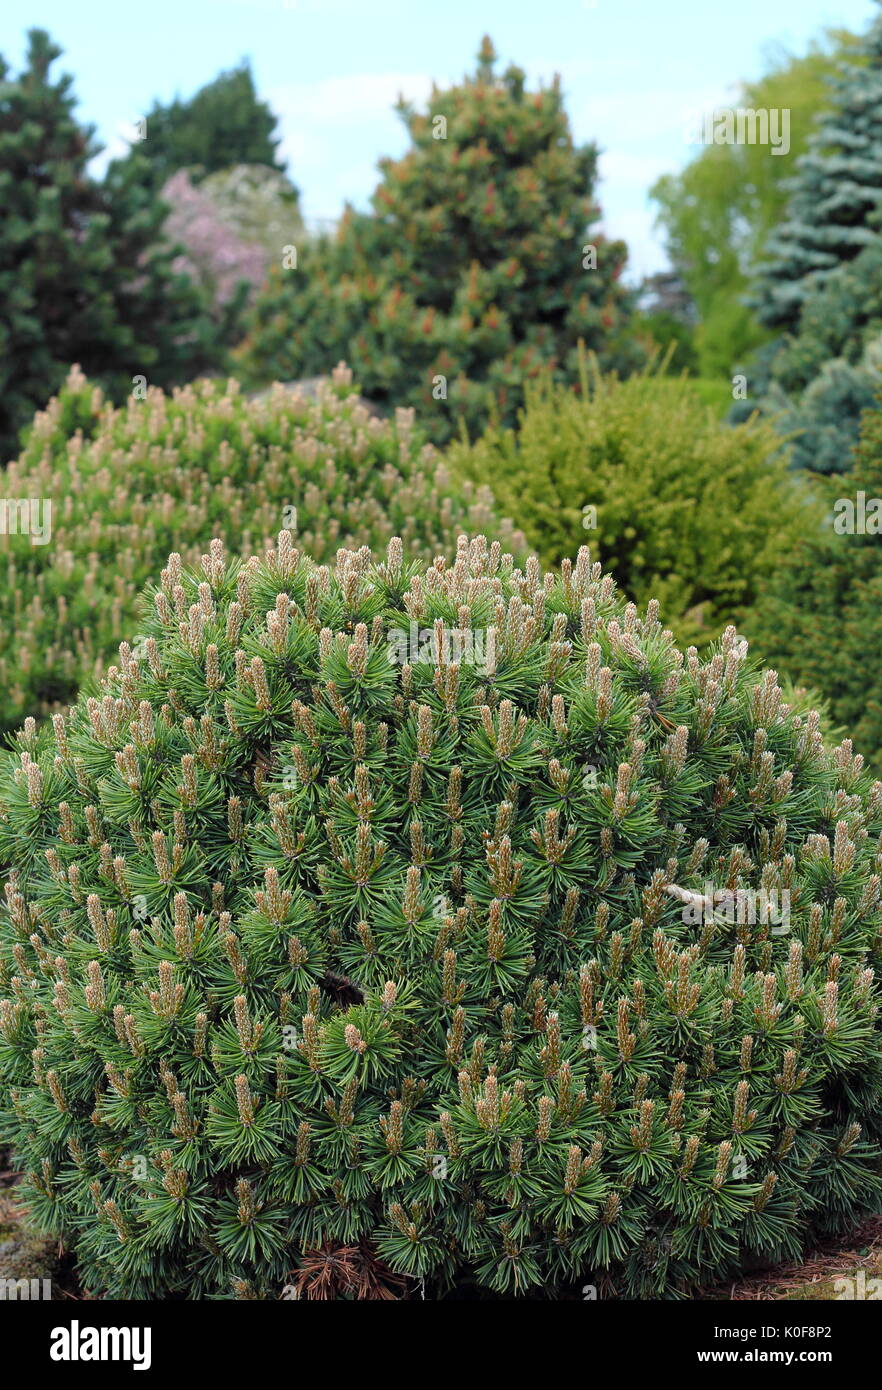 Immergrüne Zierpflanzen Bett mit Sorten der Nadelbäume und Sträucher (Abies, Pinus) Attraktive das ganze Jahr Farben auf einen britischen Garten verleihen Stockfoto